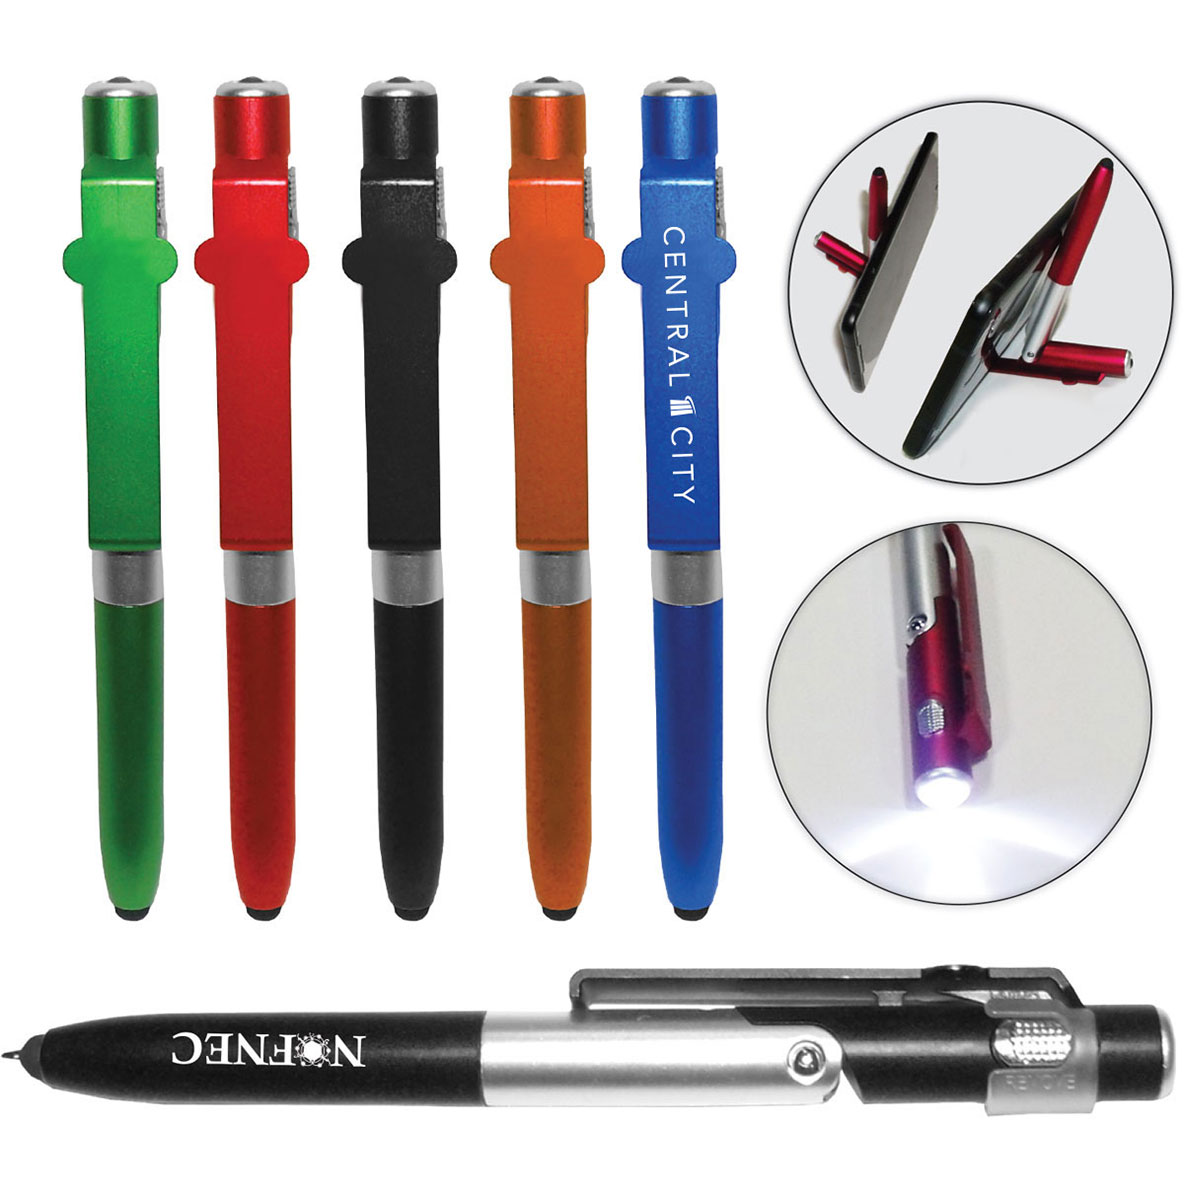 3 in 1 Multi-Function Stylus Pen